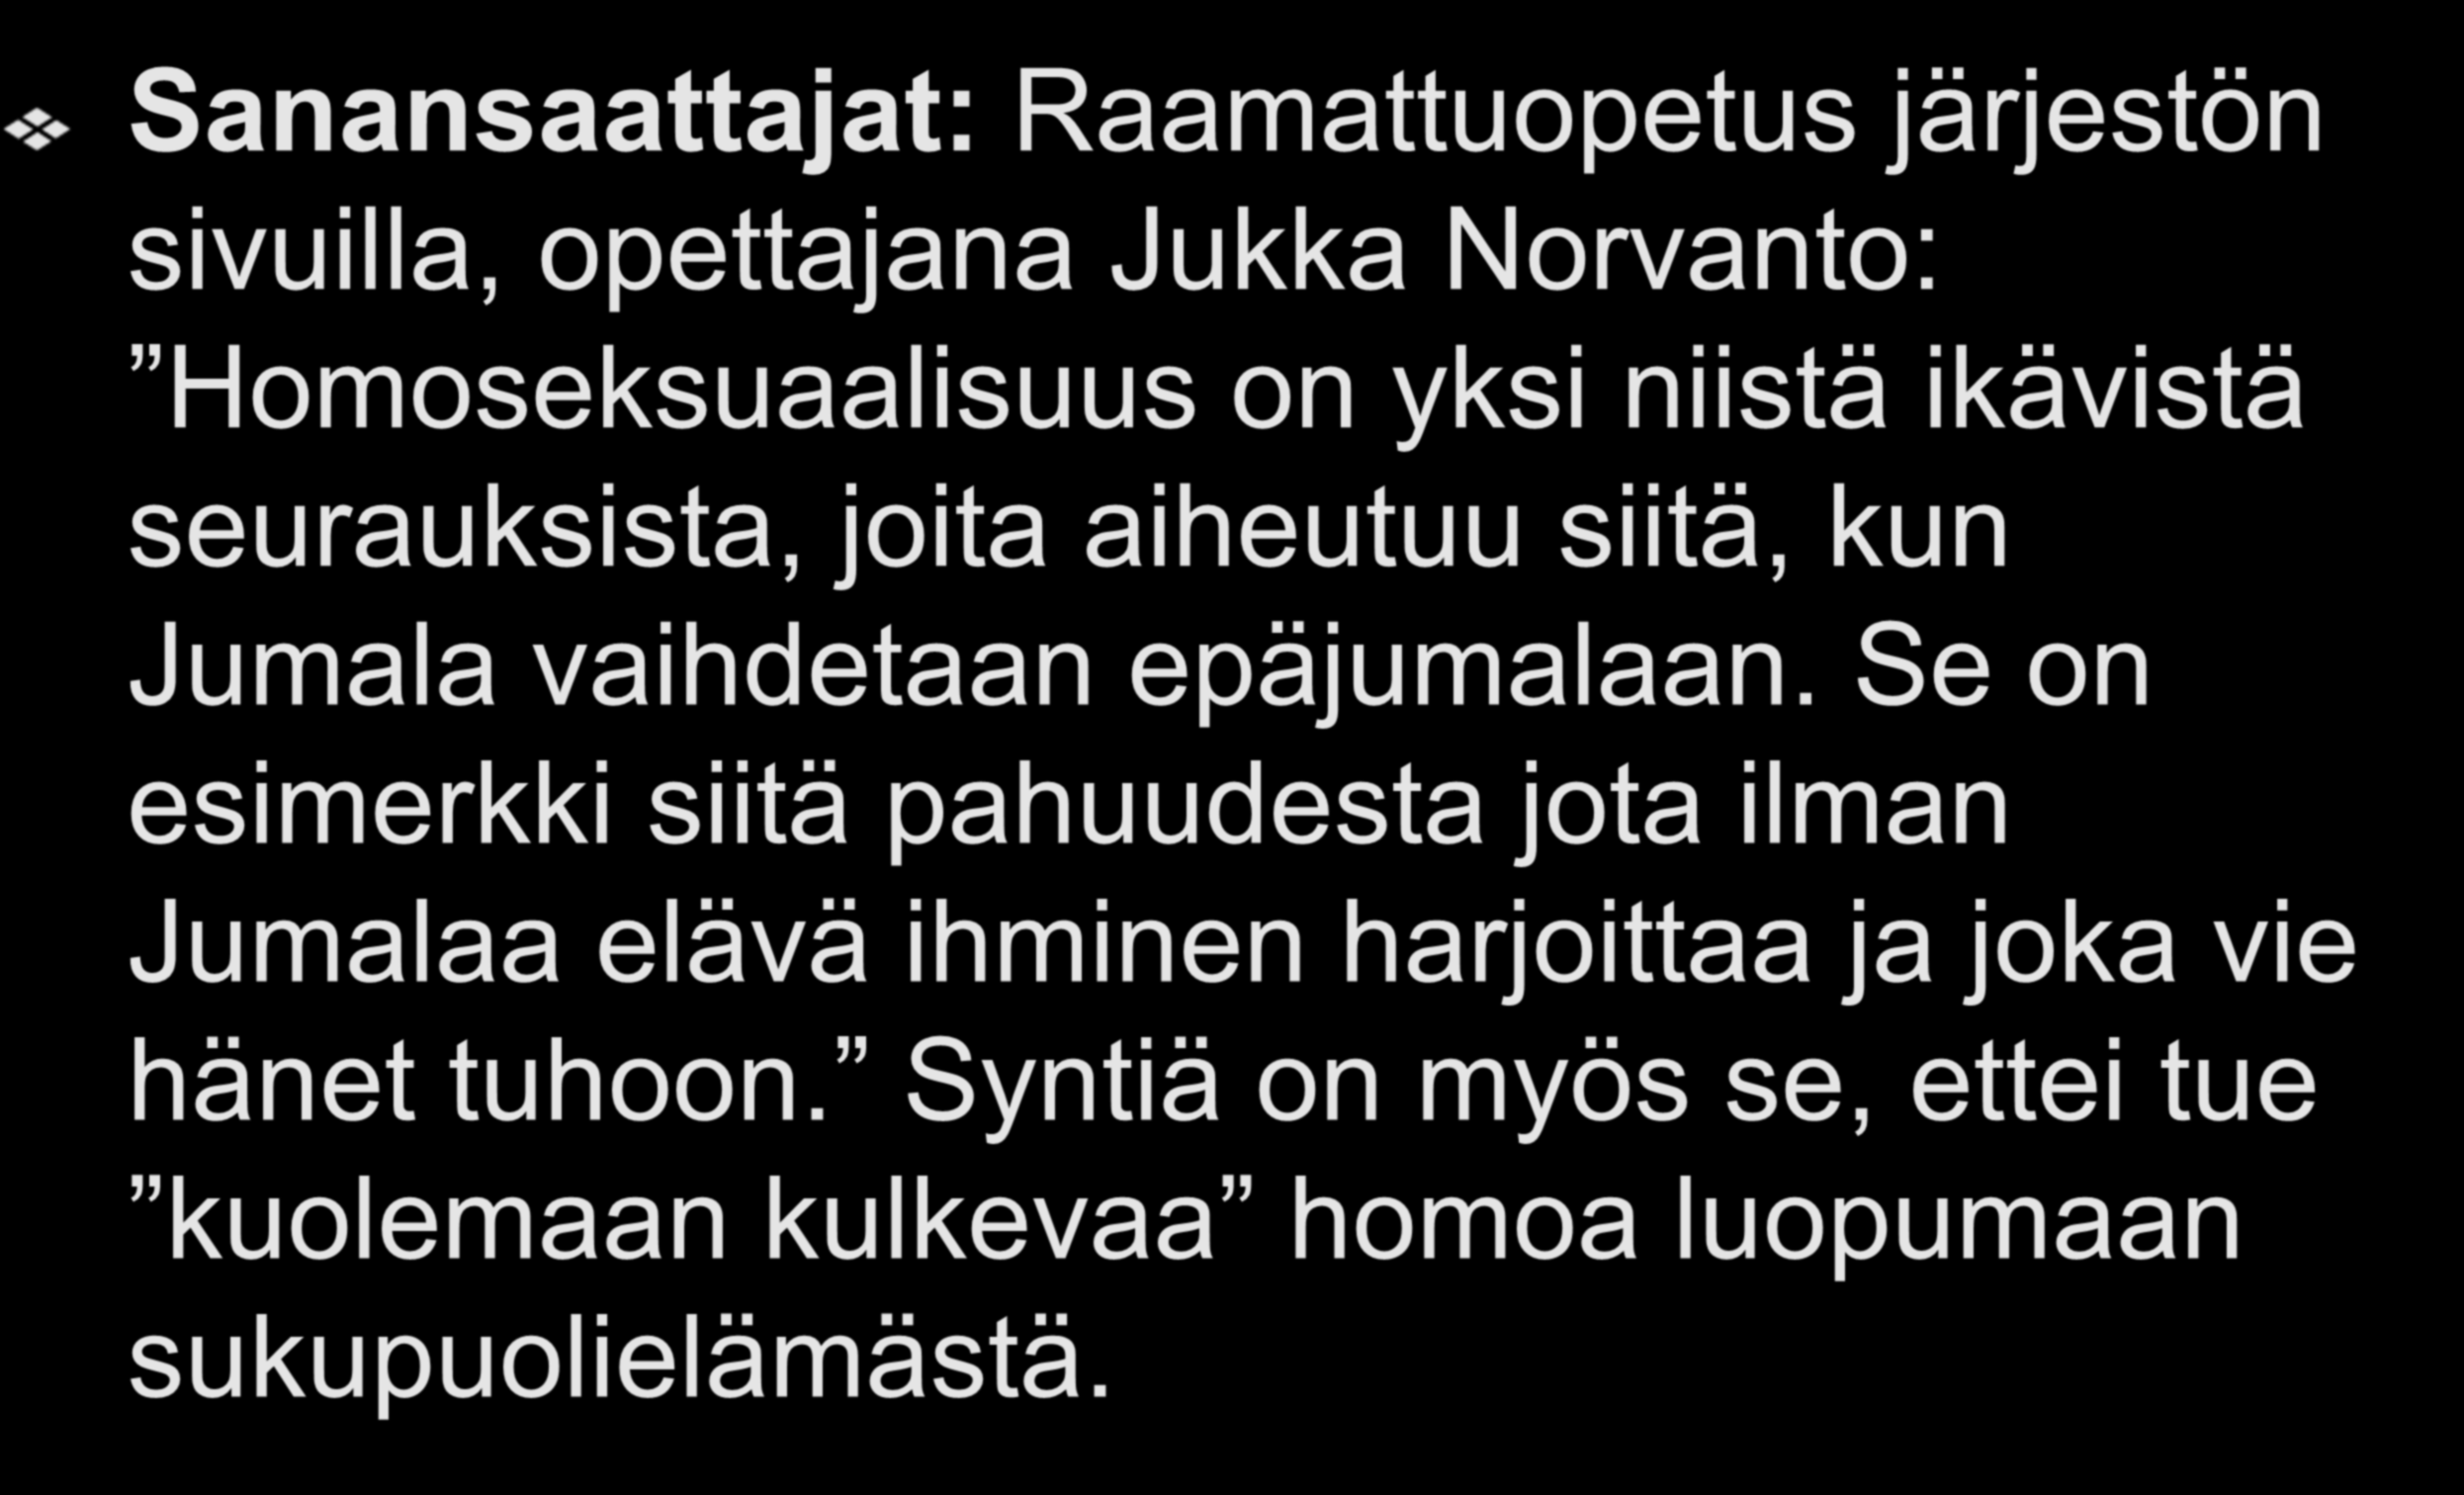 Torjujat Sanansaattajat: Raamattuopetus järjestön sivuilla, opettajana Jukka Norvanto: Homoseksuaalisuus on yksi niistä ikävistä seurauksista, joita aiheutuu siitä, kun Jumala vaihdetaan